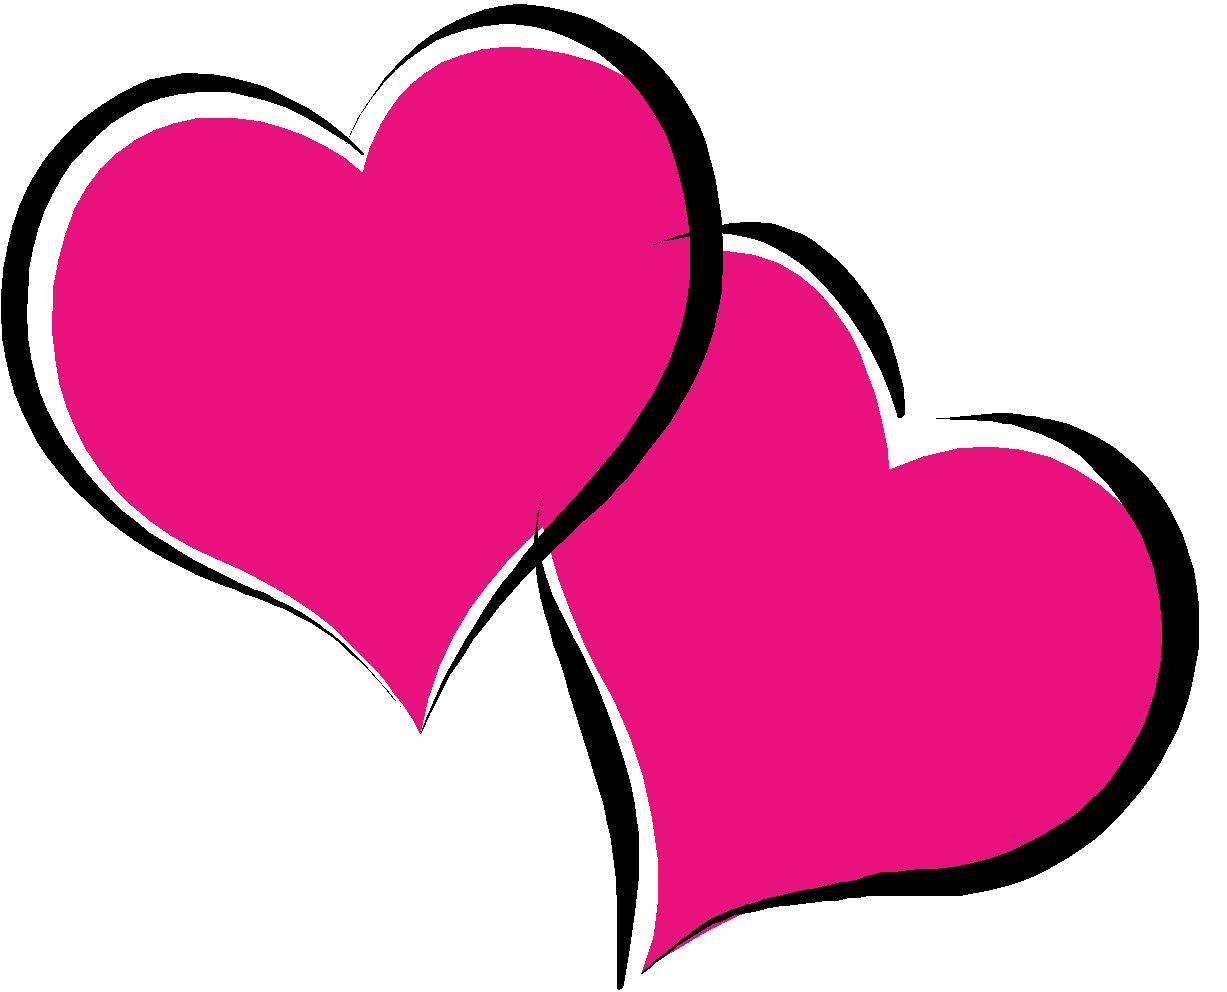 Hearts heart clip art heart images - Clipartix